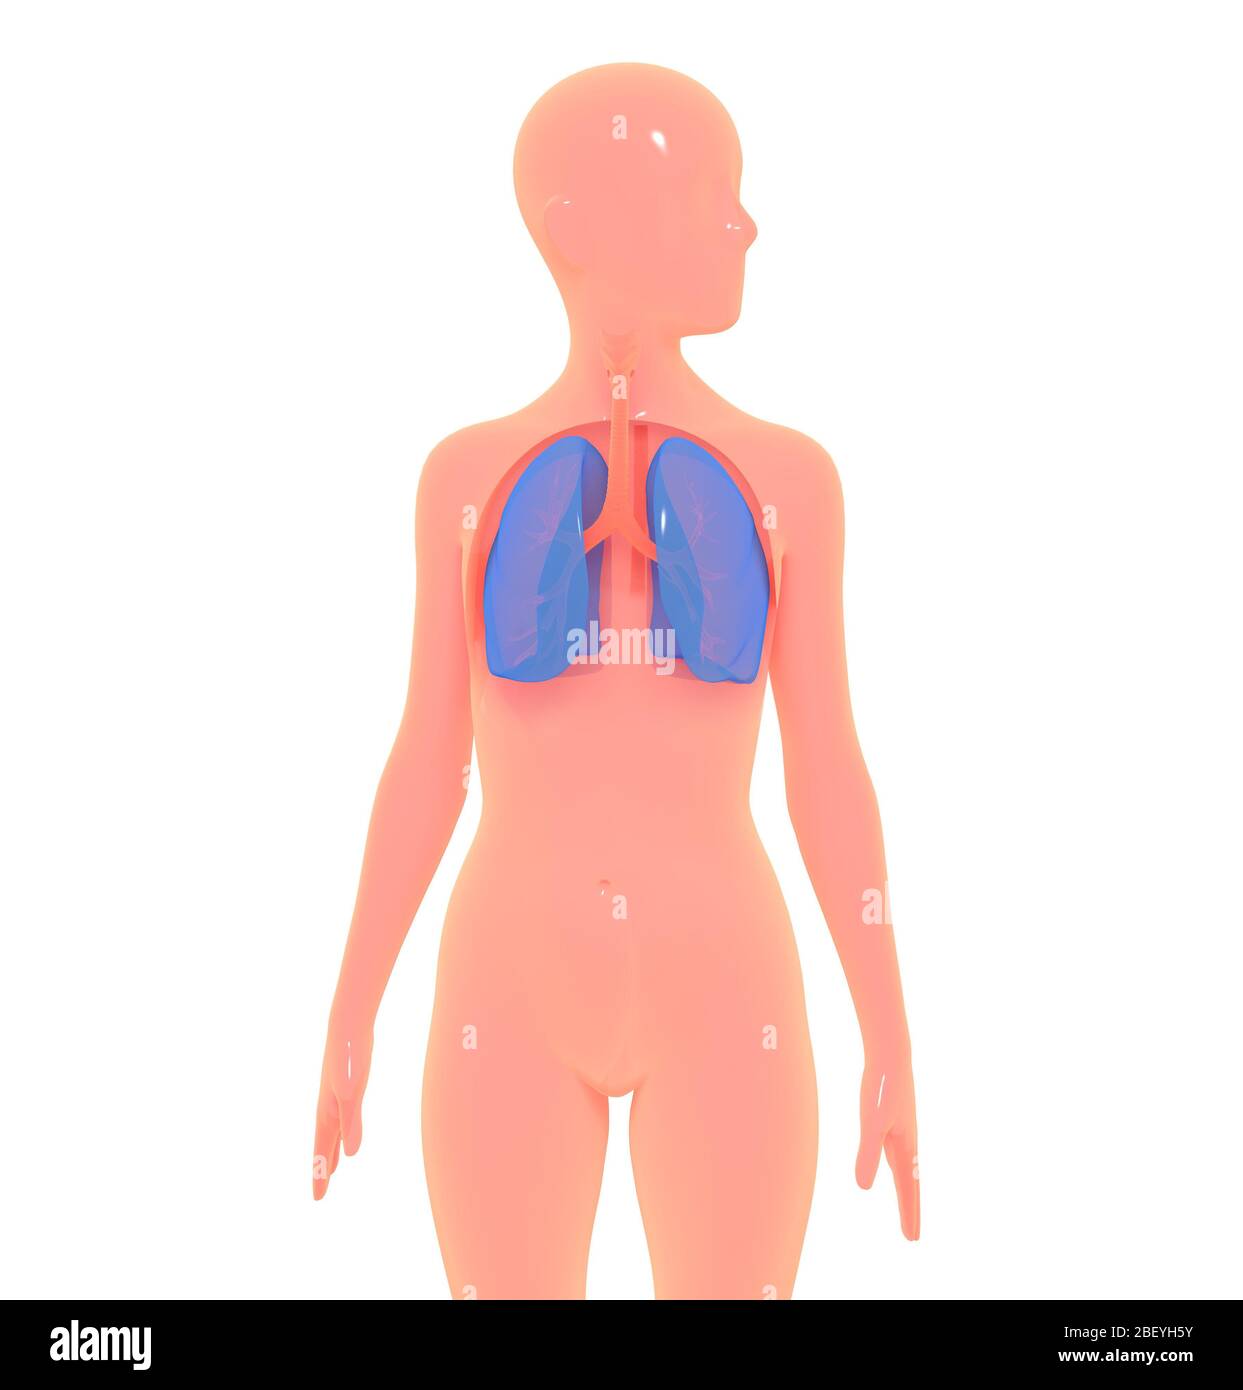 Illustrazione 3D del sistema respiratorio rispetto al corpo umano  semplificato. Immagine isolata su sfondo bianco con colori brillanti Foto  stock - Alamy